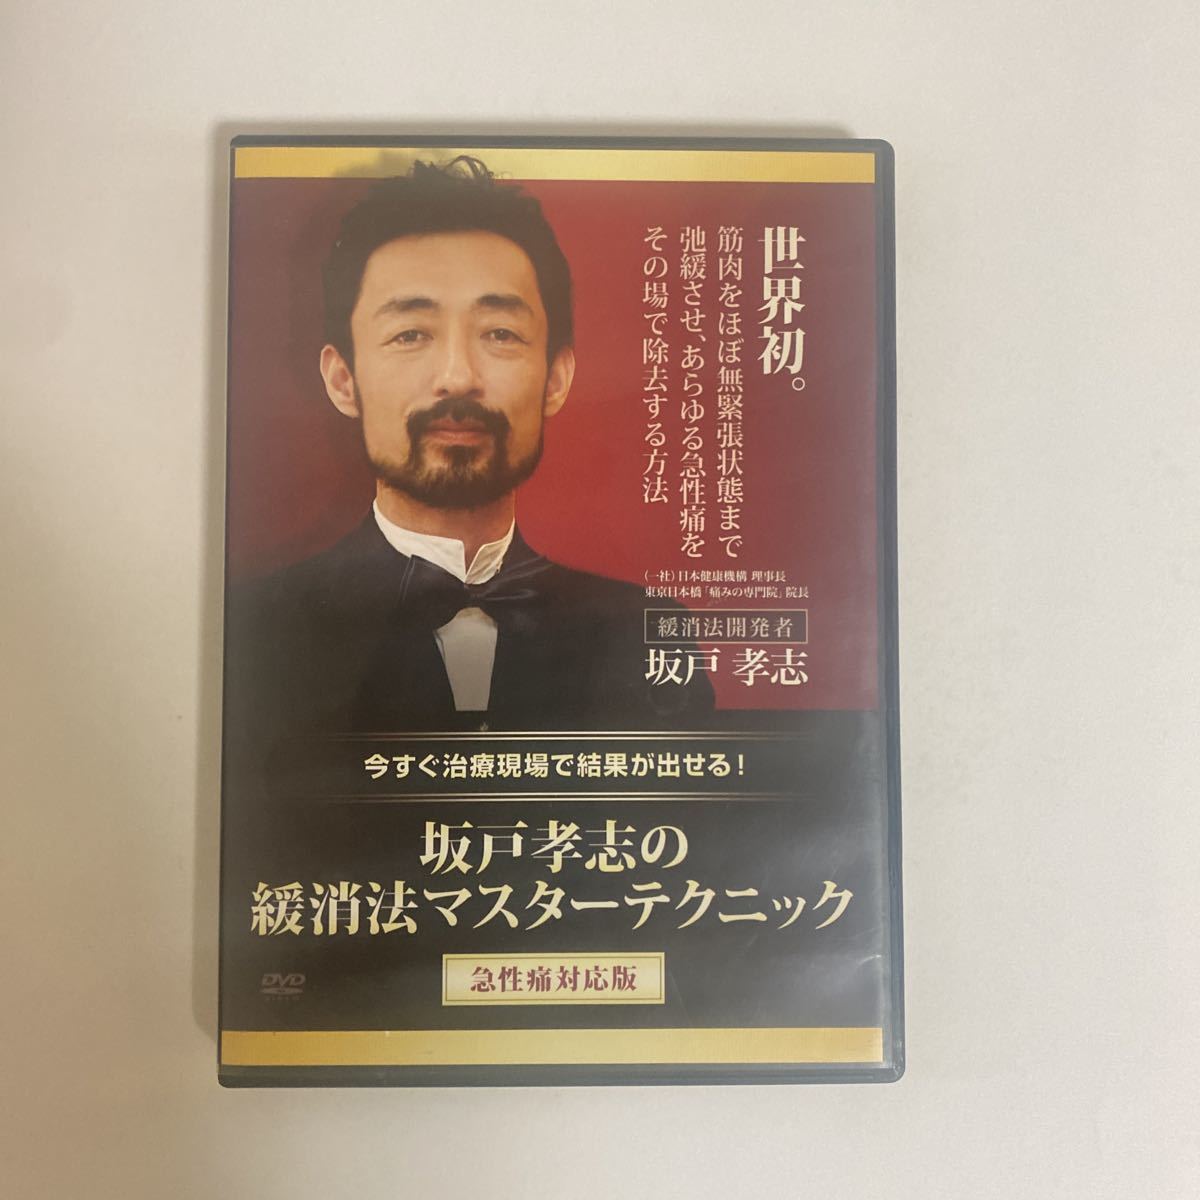 24時間以内発送 整体DVD+テキスト【坂戸孝志の緩消法マスター